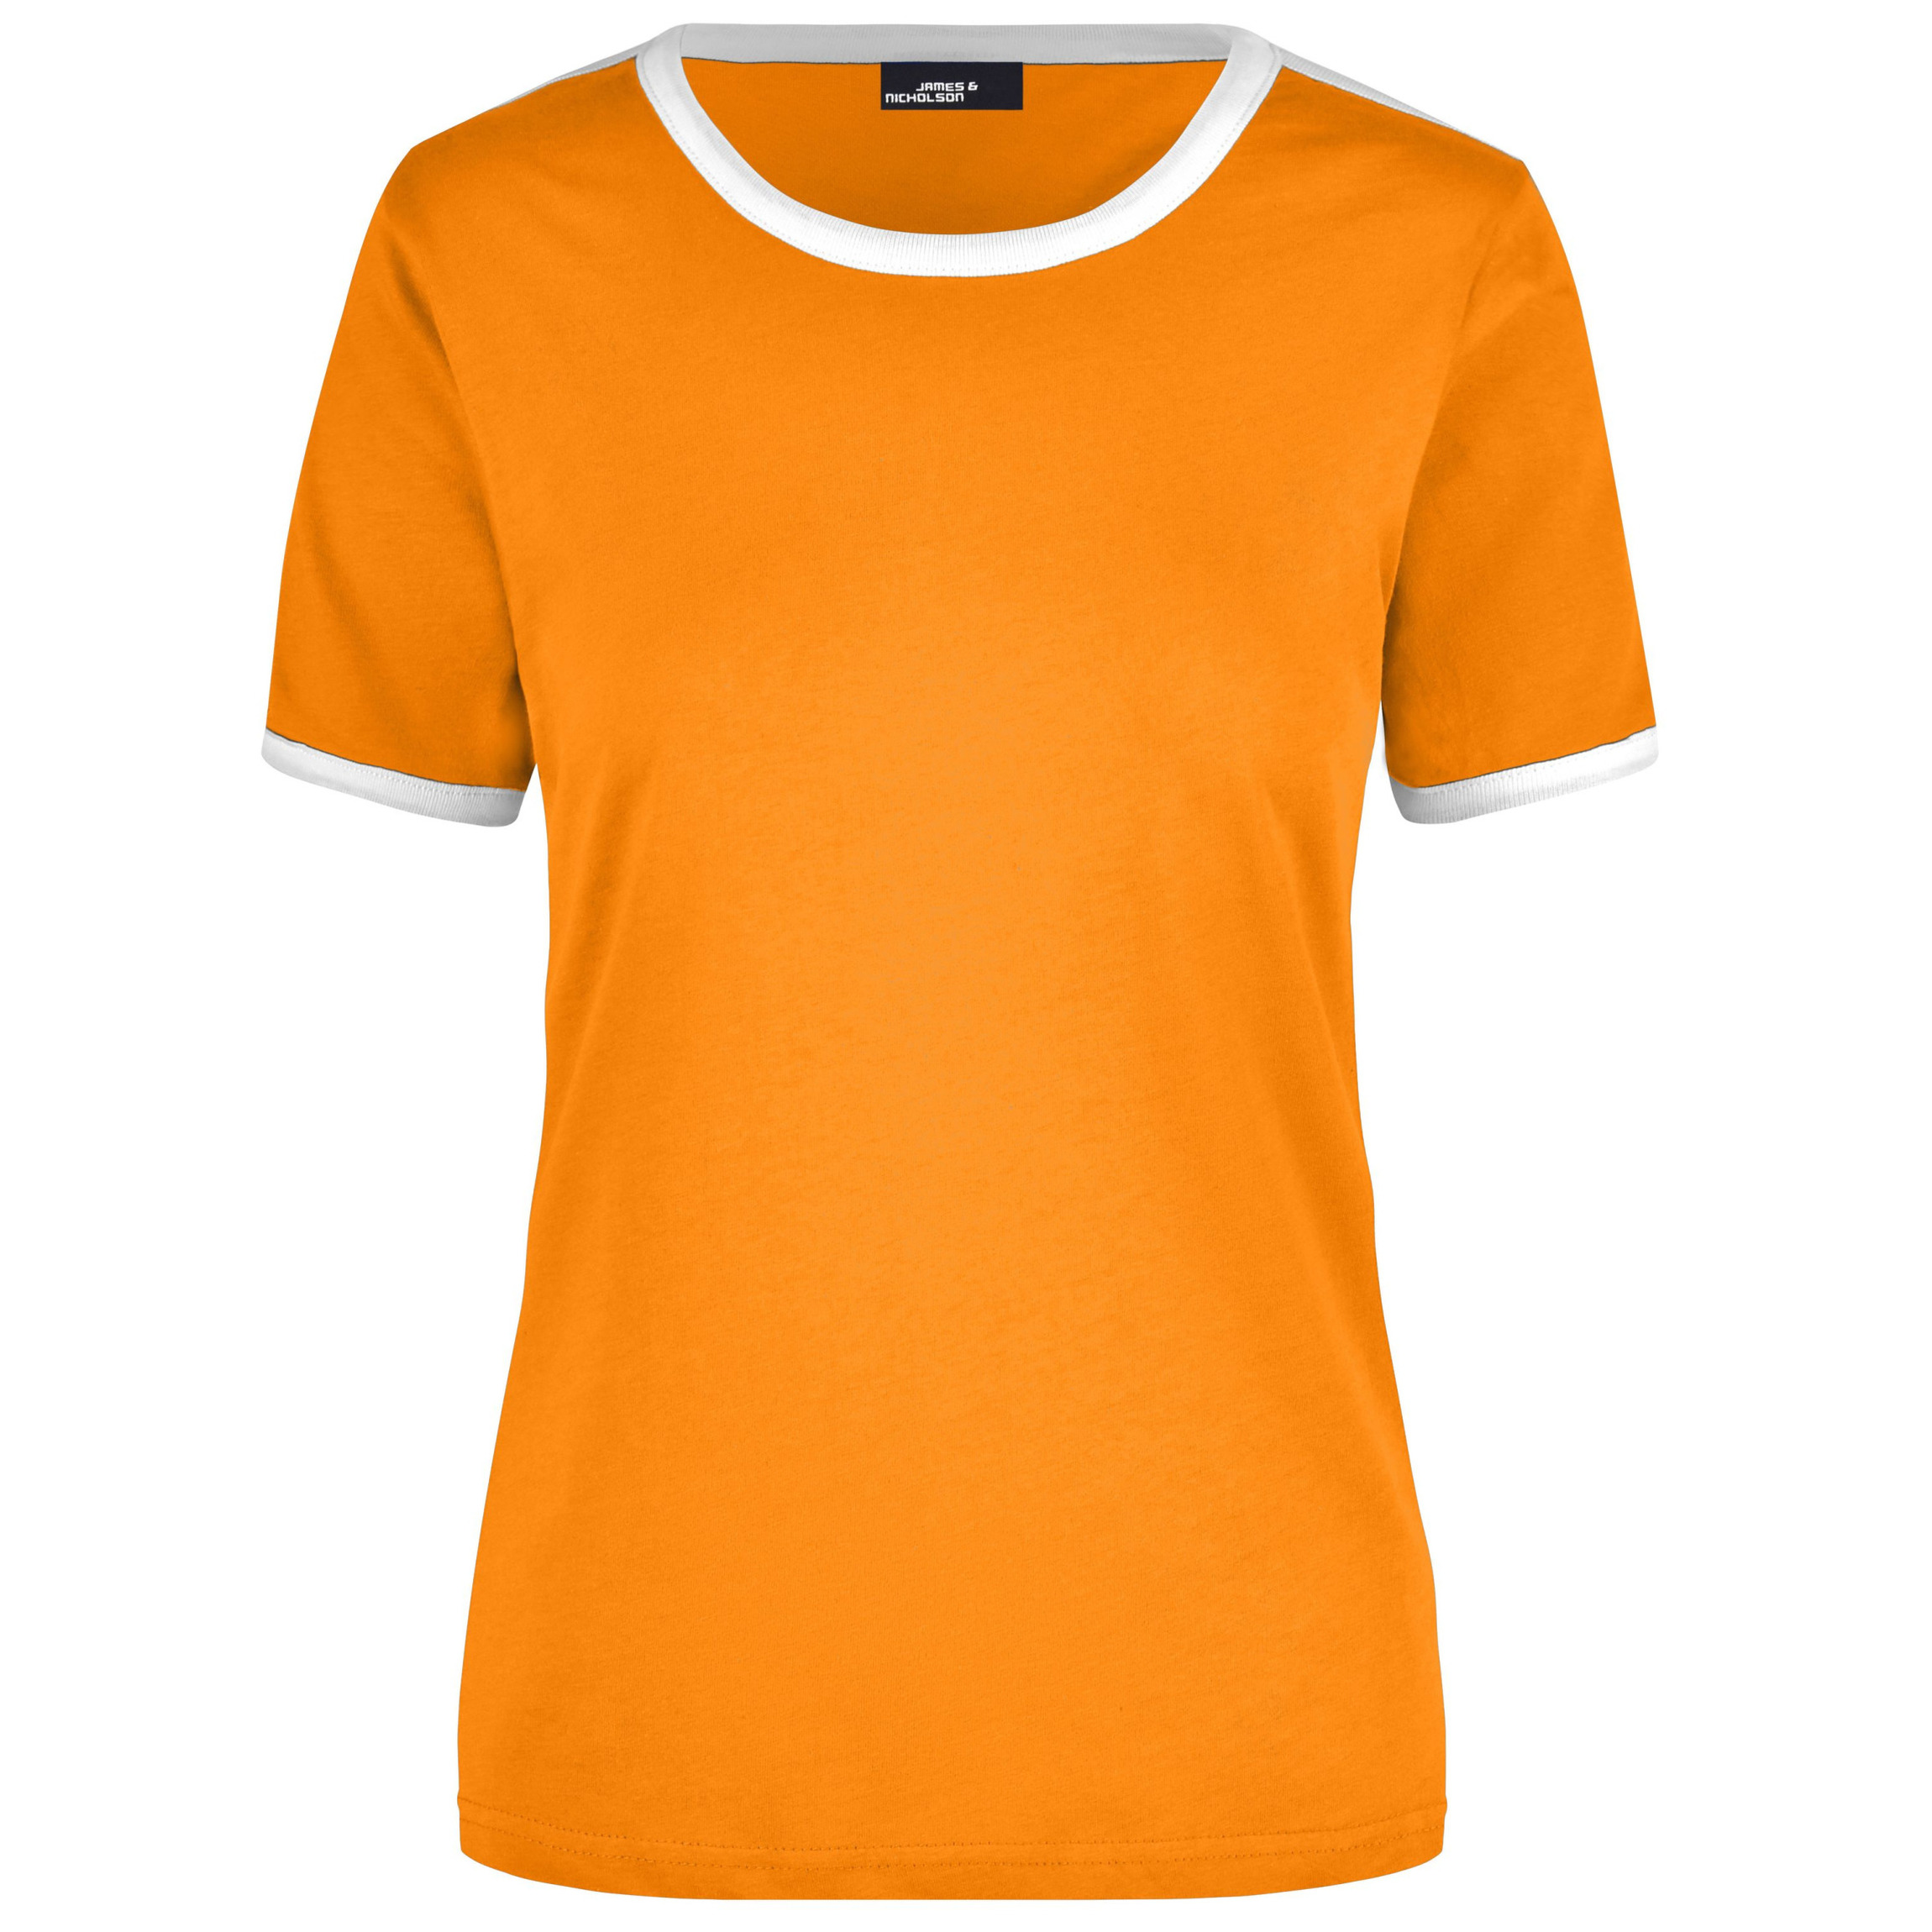 Dames t-shirt oranje met wit